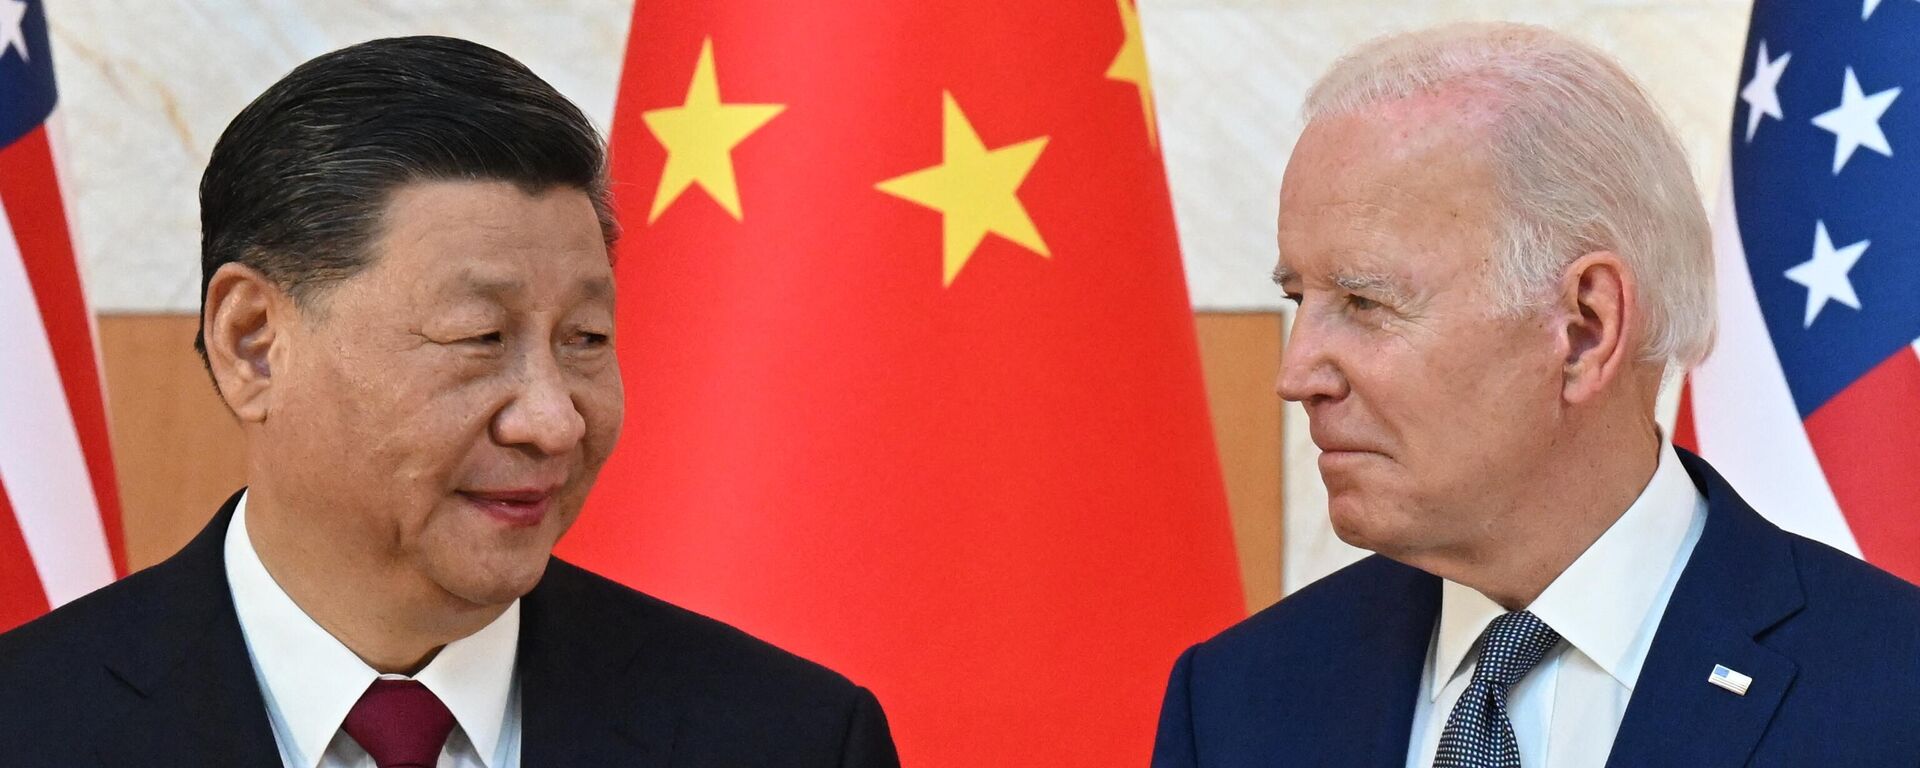 ABD Başkanı Joe Biden ile Çin Devlet Başkanı Şi Cinping arasındaki ilk yüz yüze görüşme, Endonezya'nın Bali Adası'nda düzenlenen G20 zirvesinde gerçekleşti. - Sputnik Türkiye, 1920, 21.06.2023